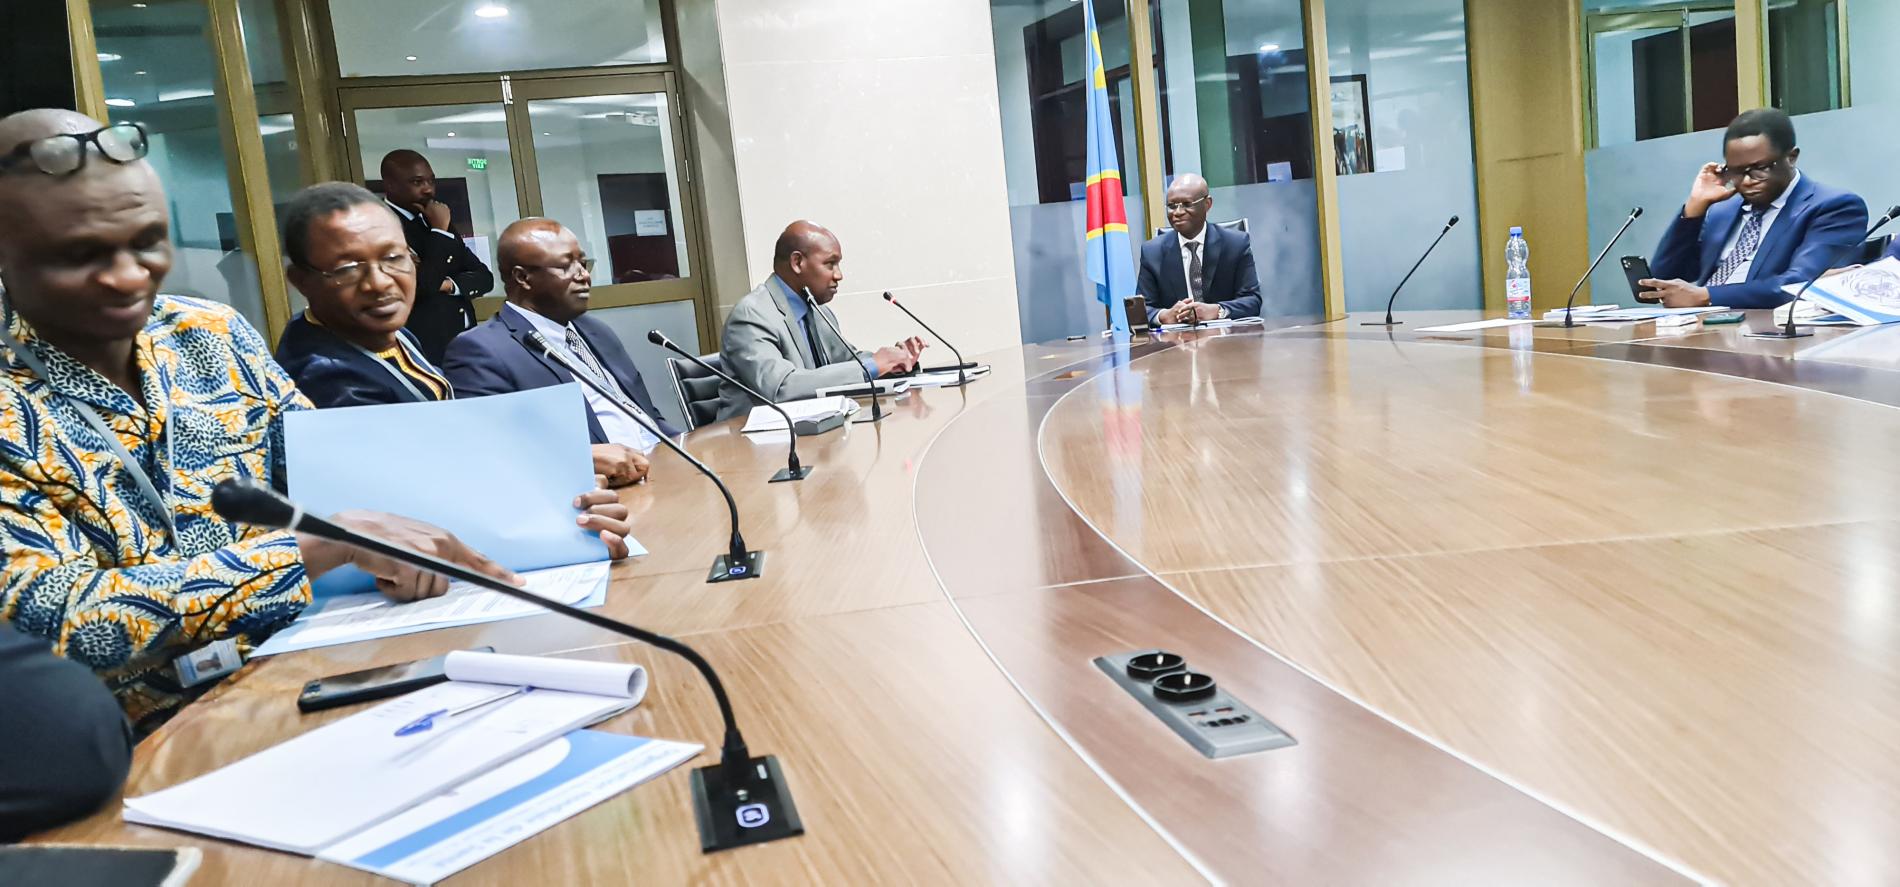 Le Ministre de la Santé Publique, Hygiène et Prévention recevant la délégation du Bureau de Pays de l'OMS, conduite par le Représentant résident, le Dr Boureima Hama Sambo le 19 avril 2023 pour une réunion d'information sur le fonctionnement de l'OMS, ainsi que la participation de la délégation de la RDC à la 76ème Assemblée mondiale de la Santé prévue en mai 2023 à Genève